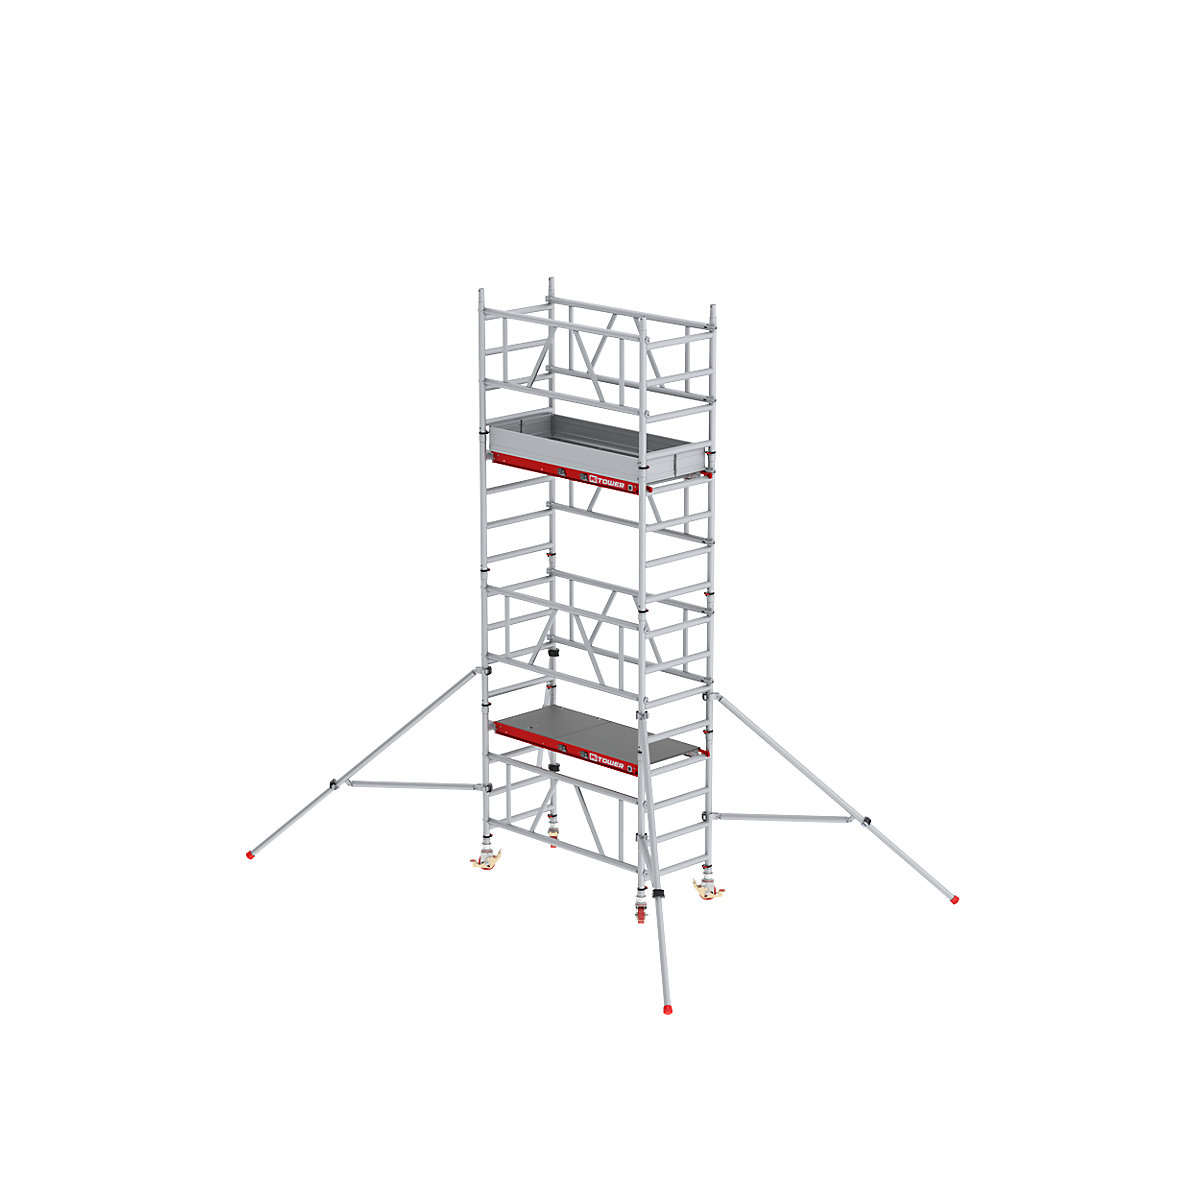 Snel op te bouwen rolsteiger MiTOWER Plus – Altrex, Fiber-Deck®-platform, werkhoogte 5 m-4